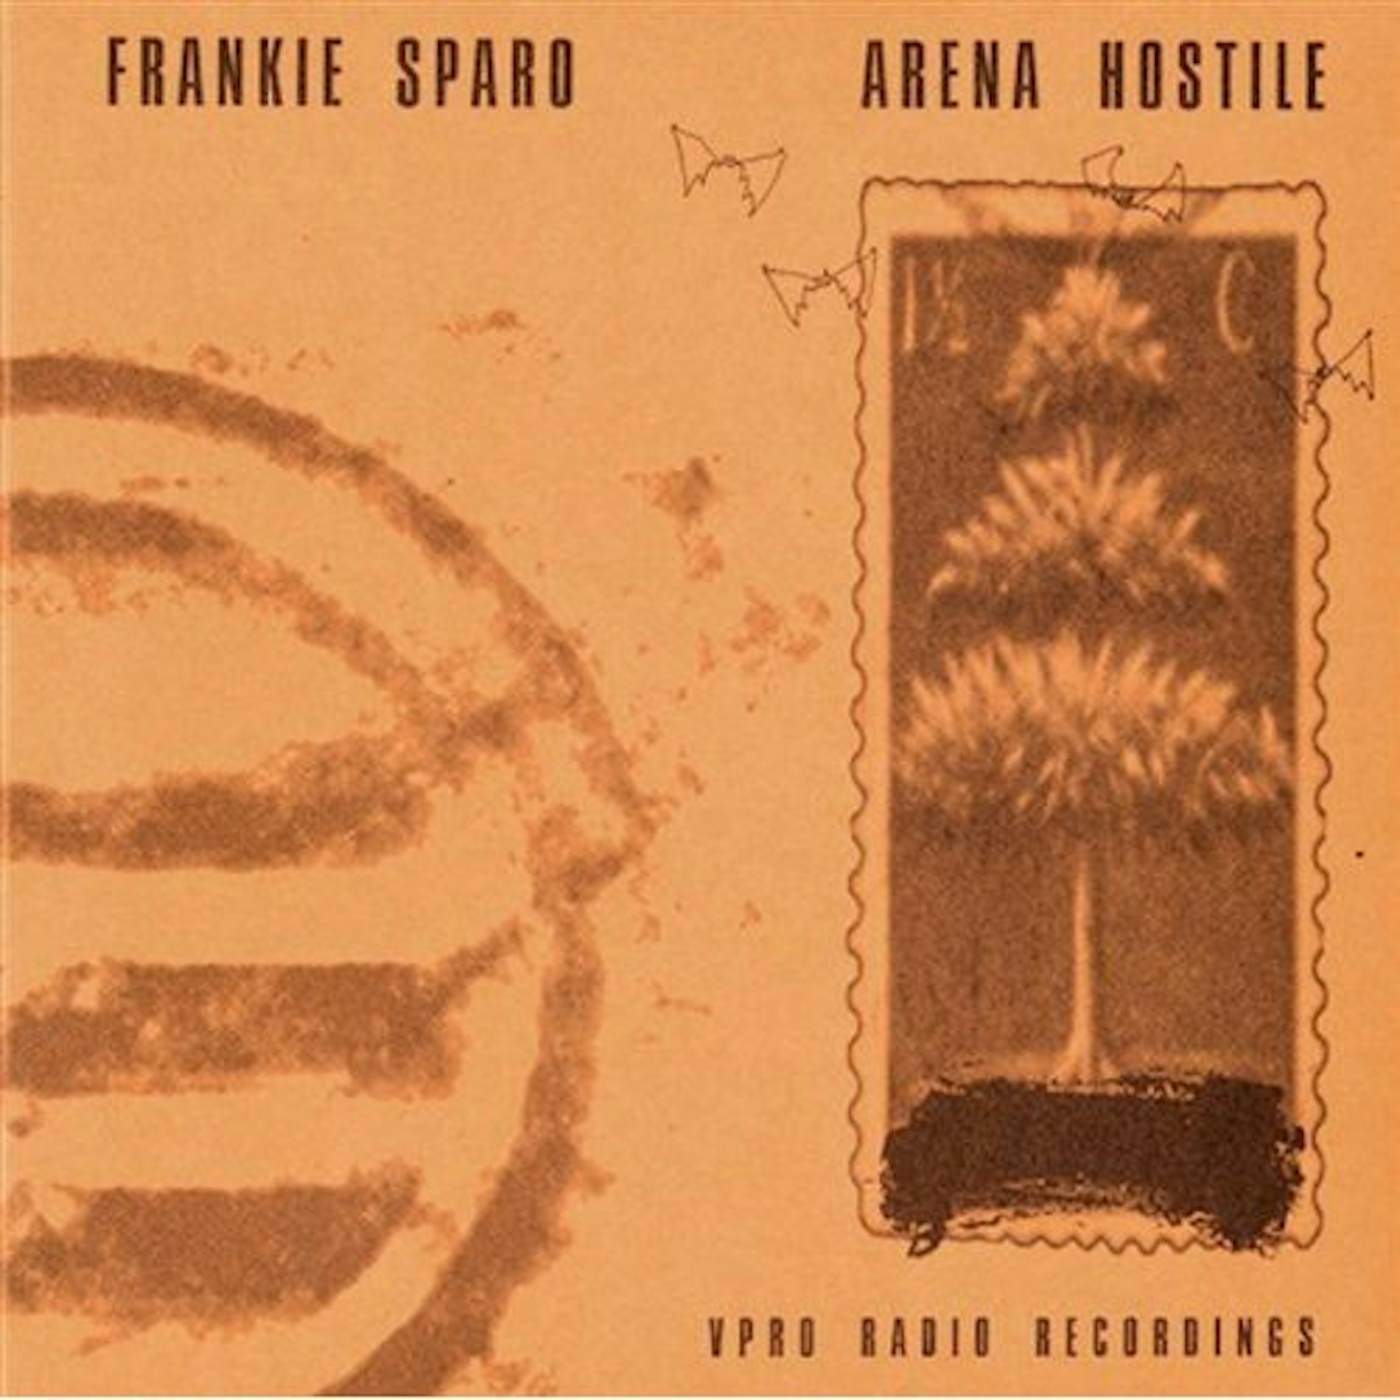 Frankie Sparo ARENA HOSTILE CD